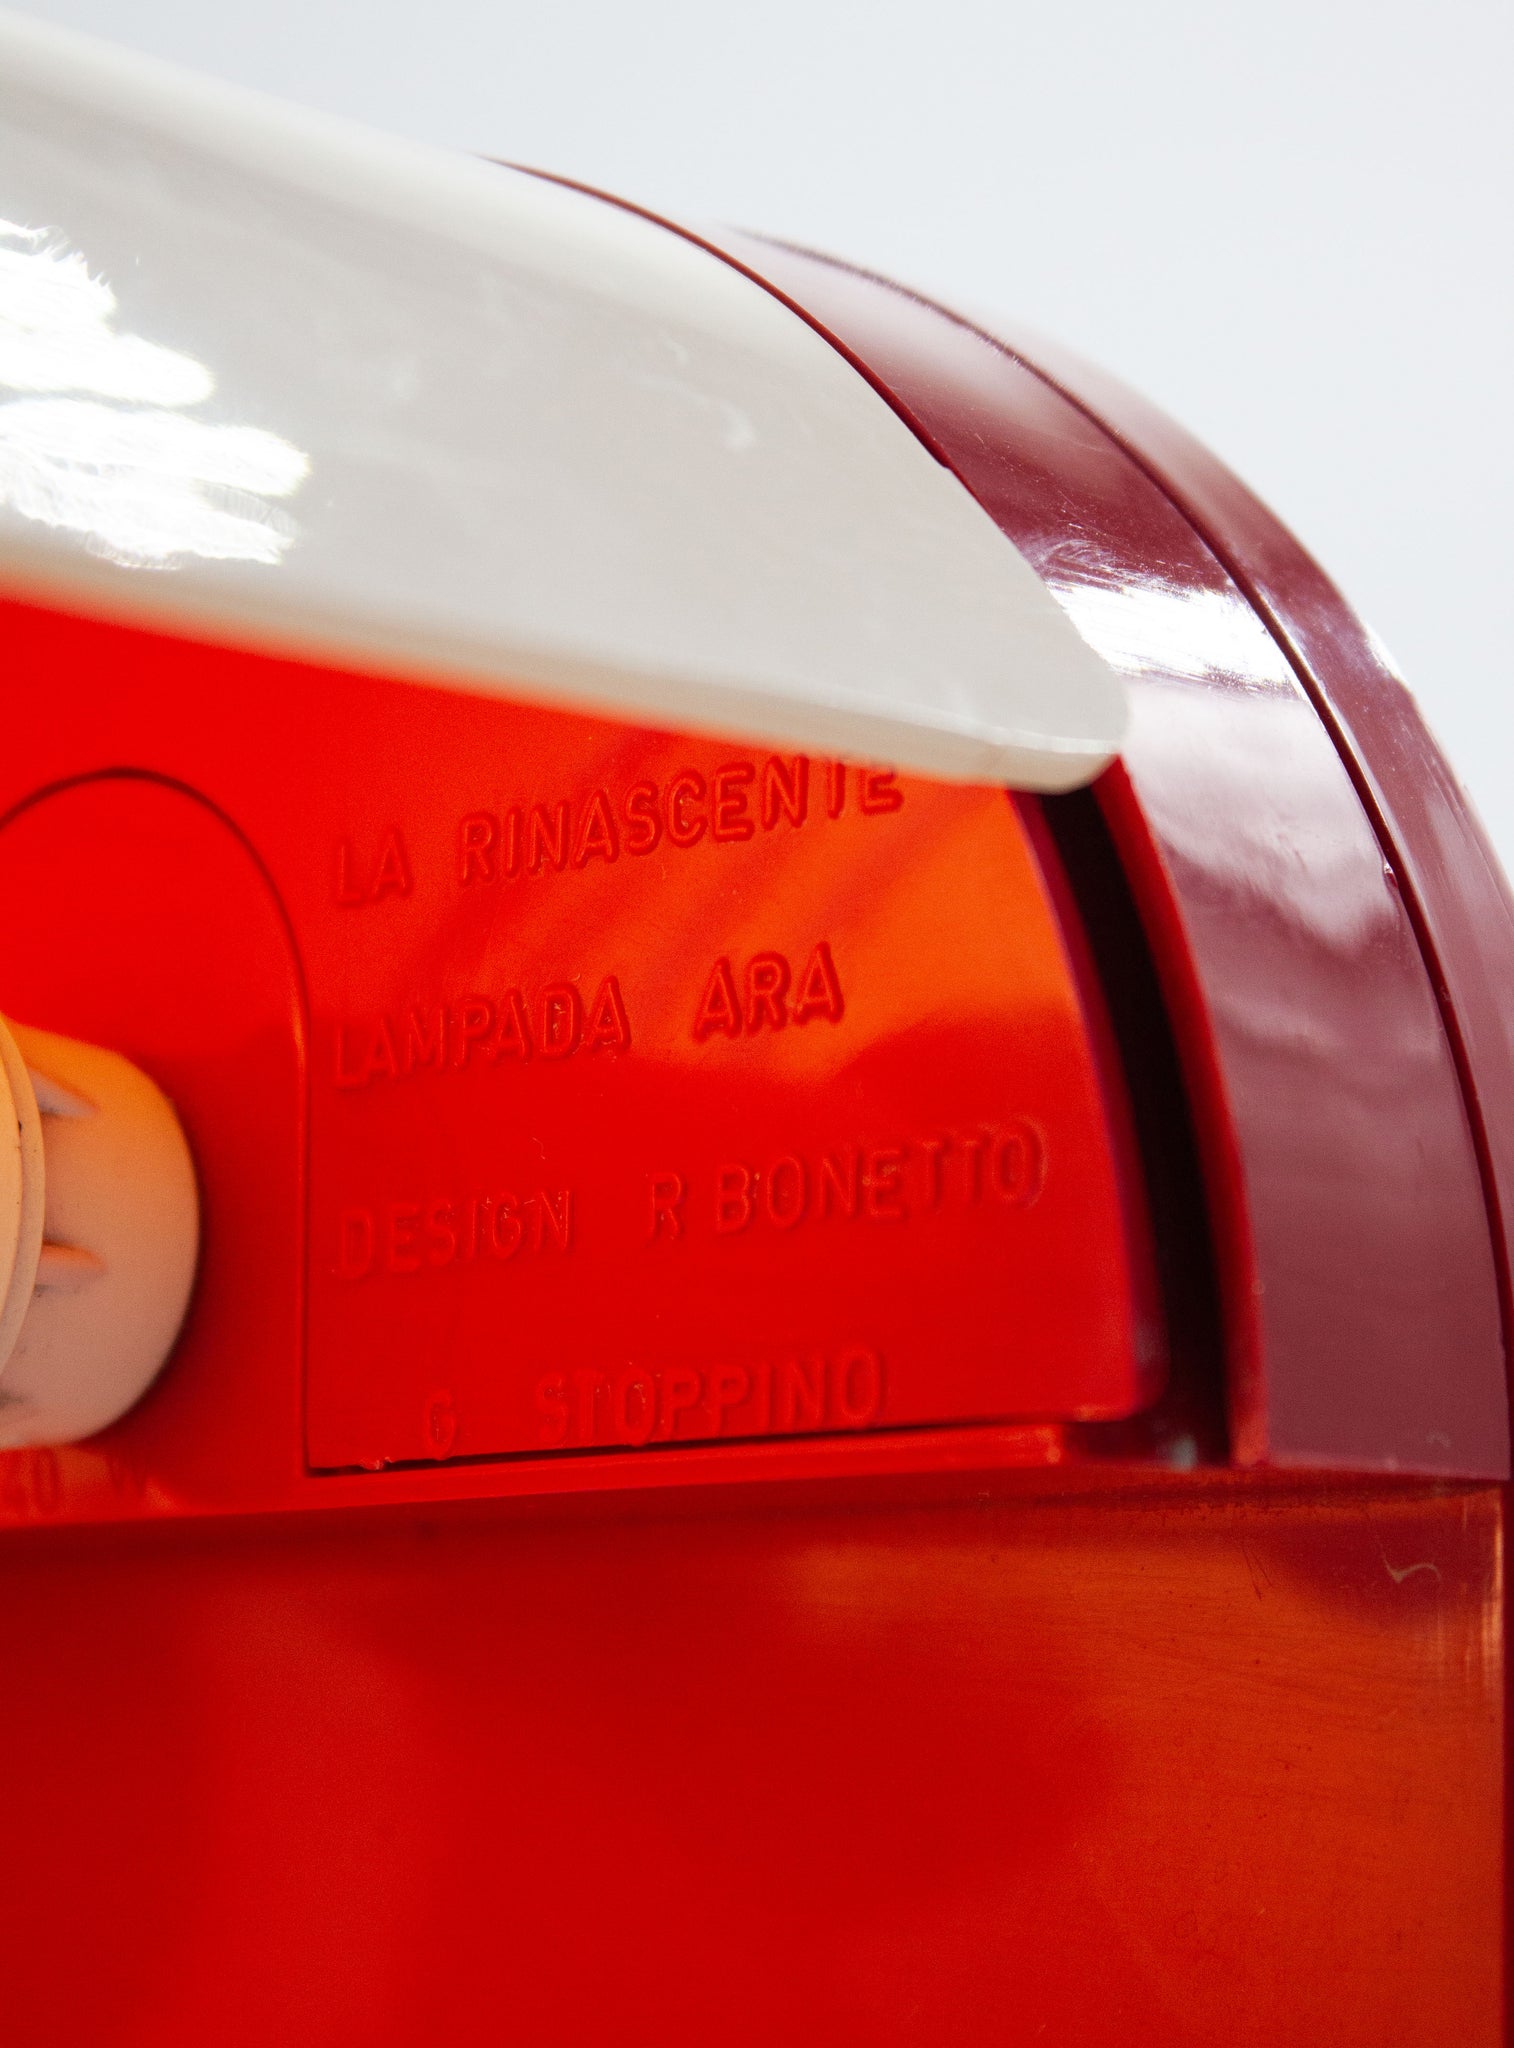 La Rinascente Ara Desk Lamp by Giotto Stoppino & Rodolfo Bonetto (Red)